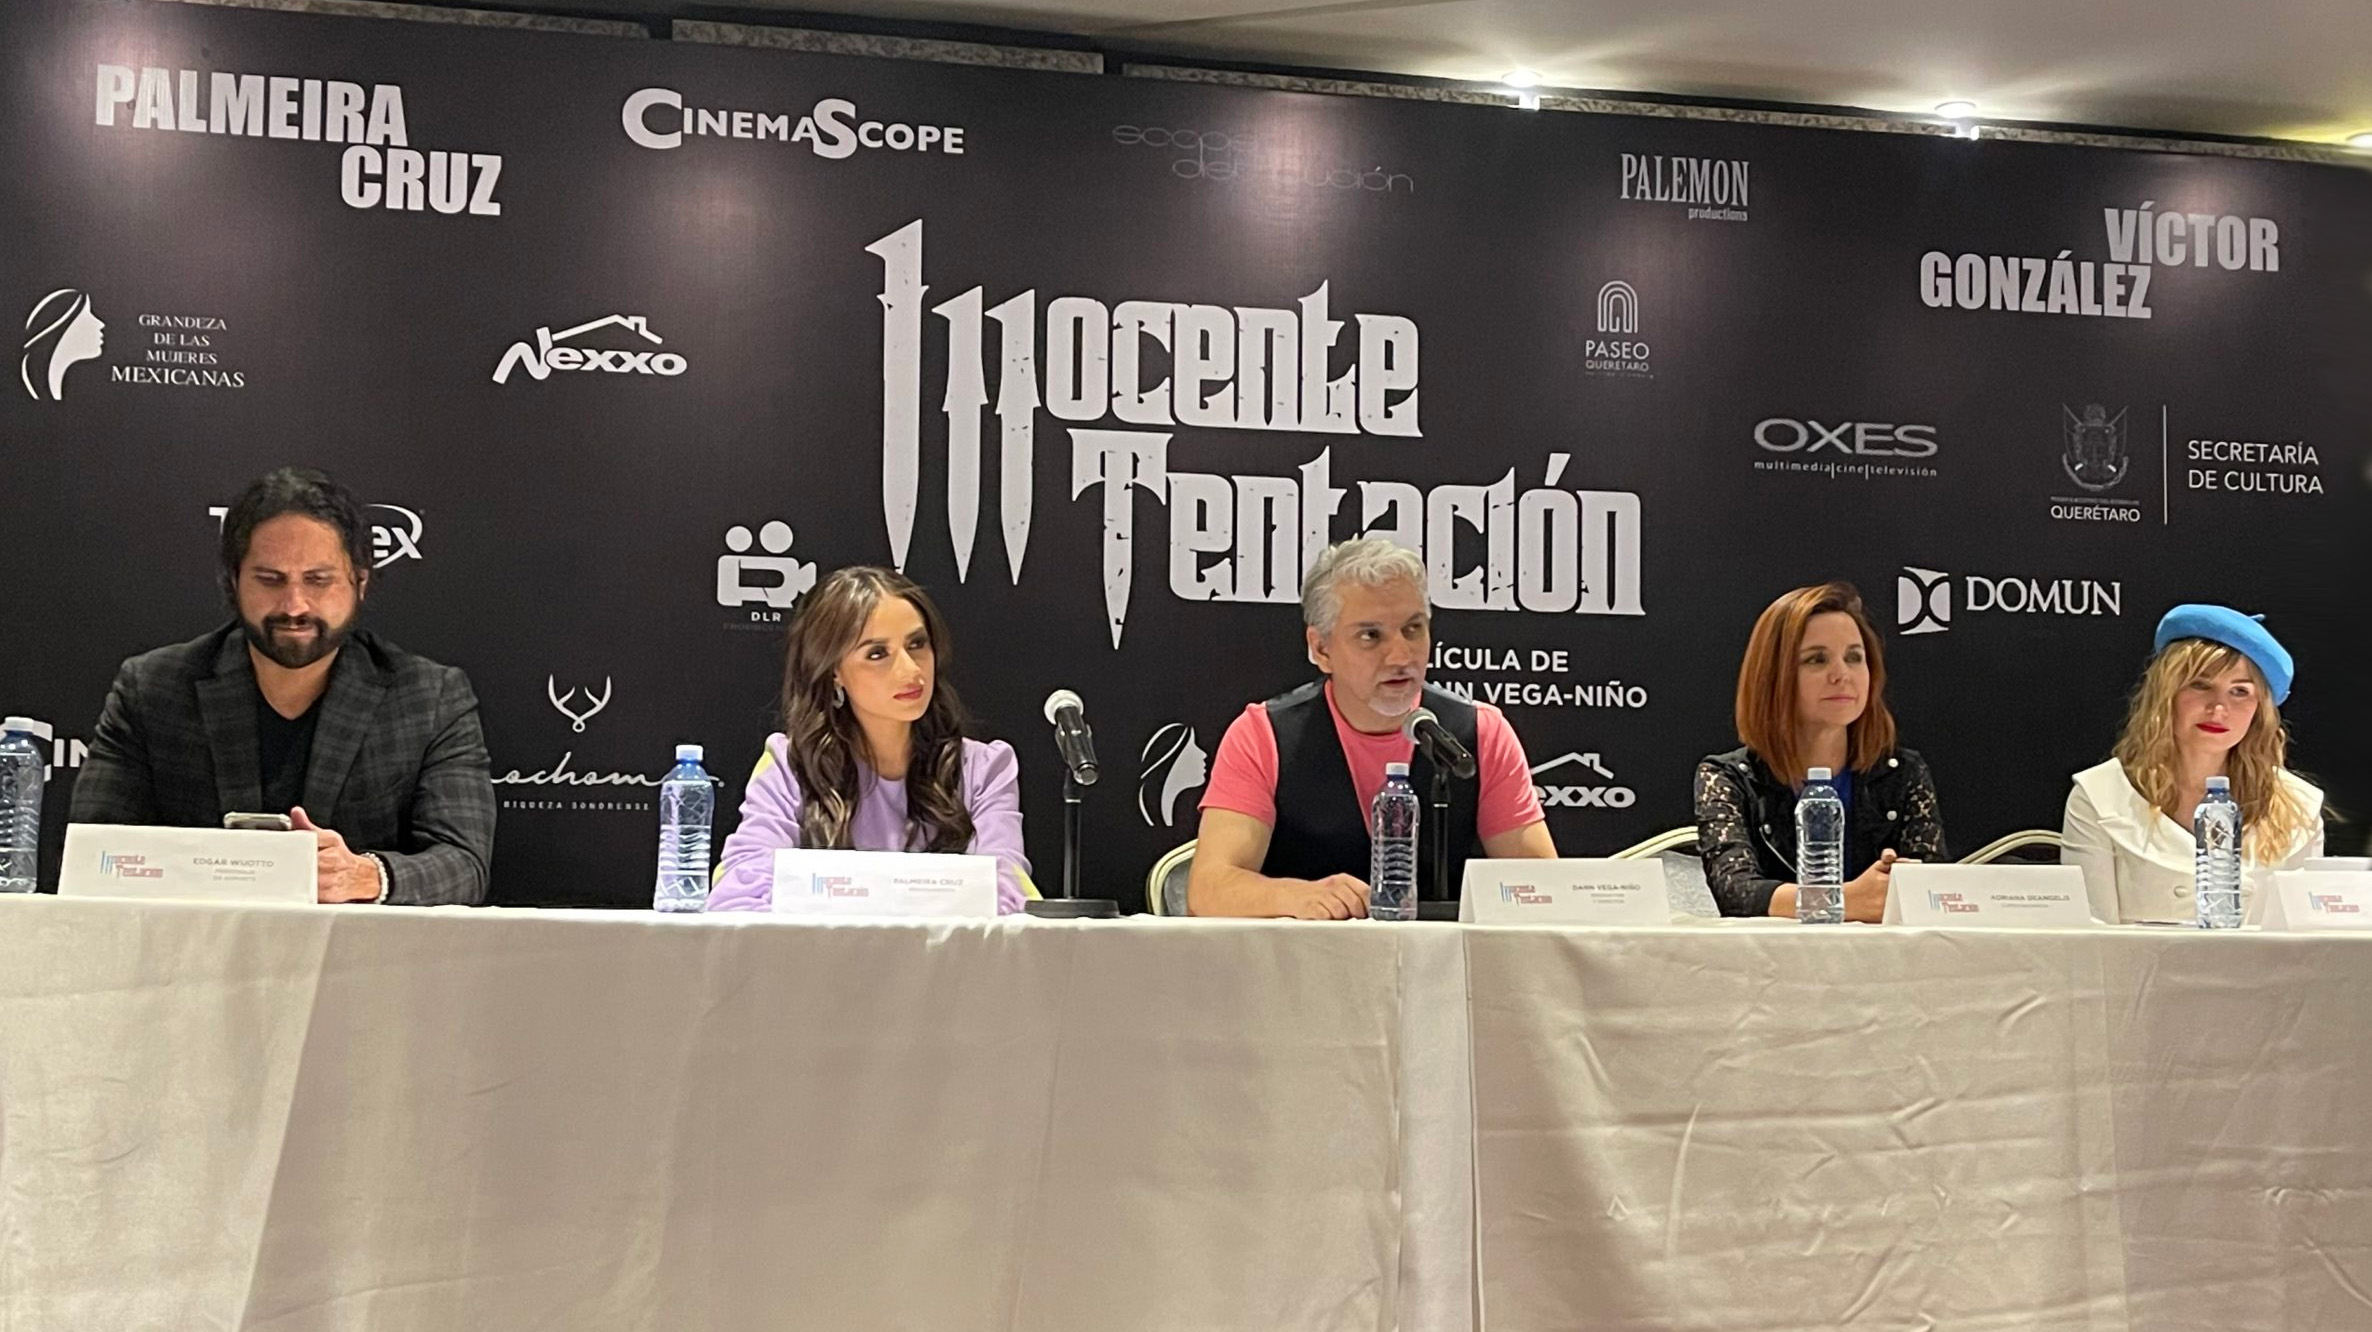 Presentación de "Inocente tentación" en Querétaro